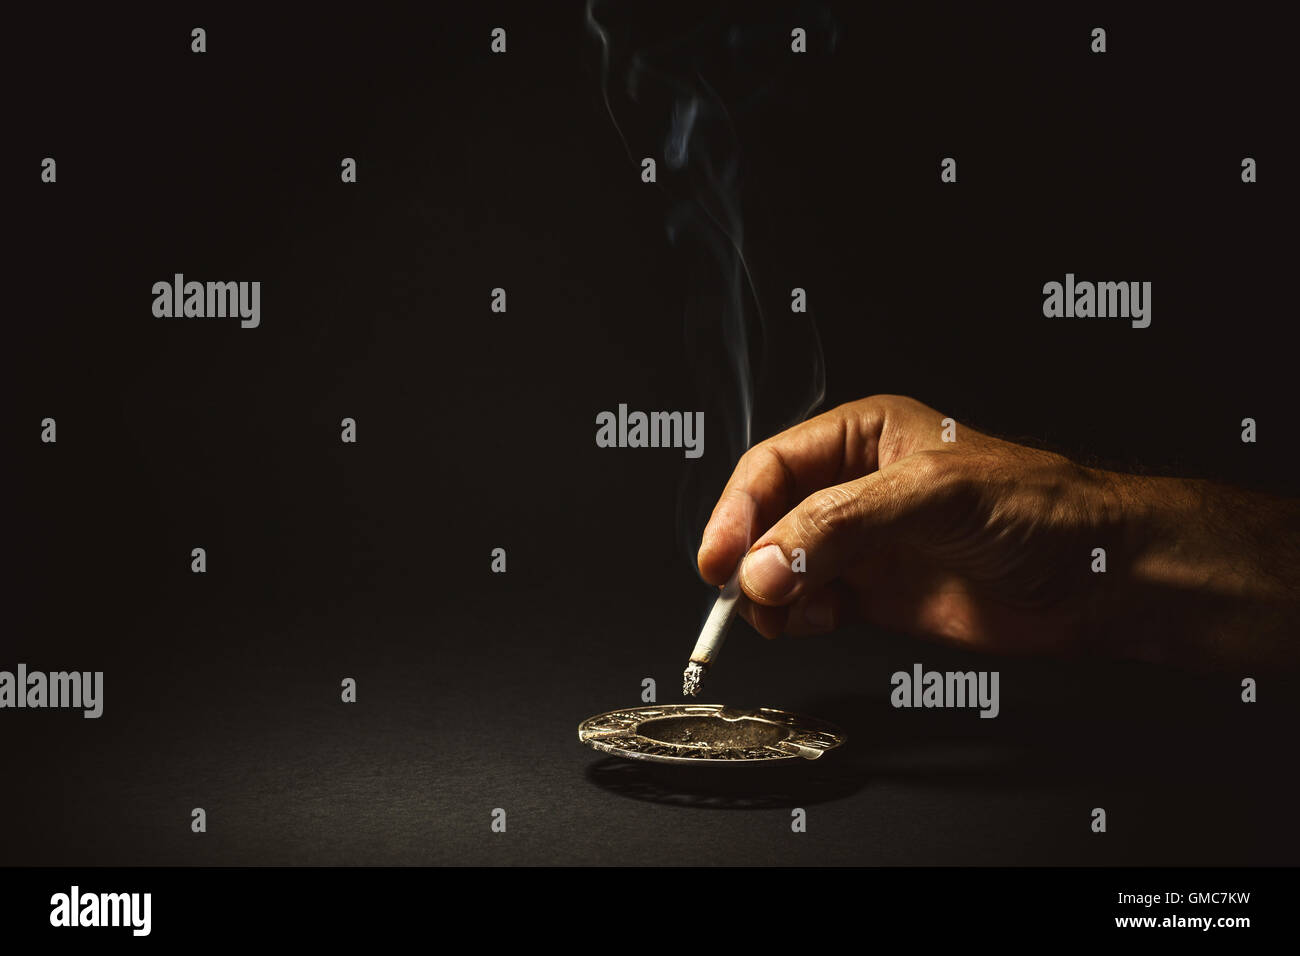 Composizione concettuale su smettere di fumare, man mano si spegne un sigaro. Foto Stock